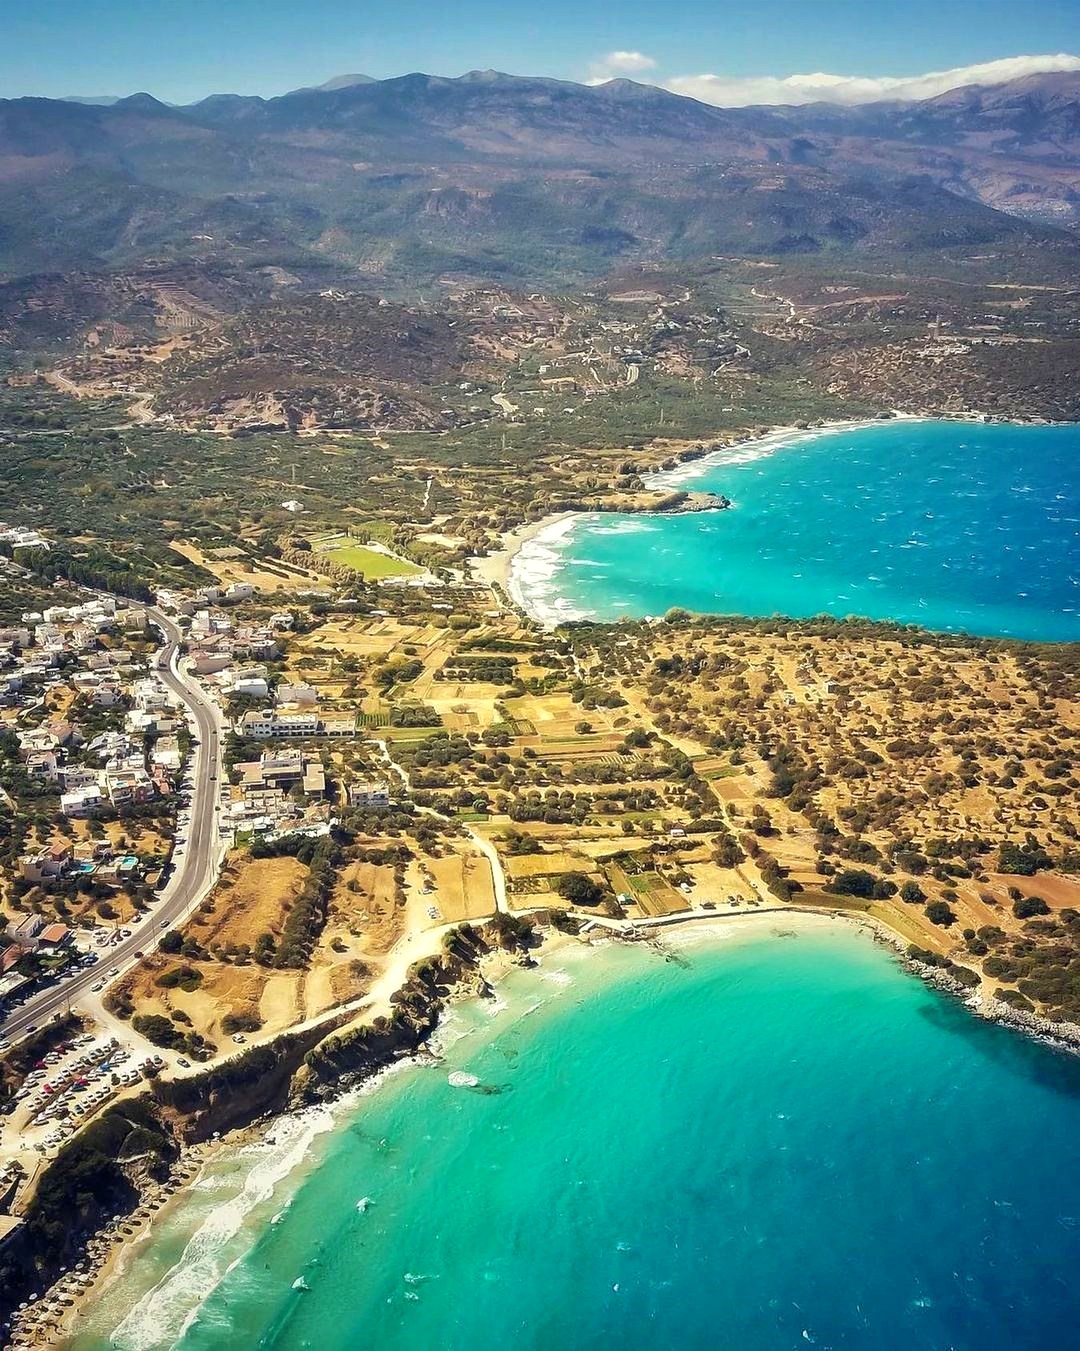 Voulisma, Agios Panteleimonas and Karavostasi Beaches